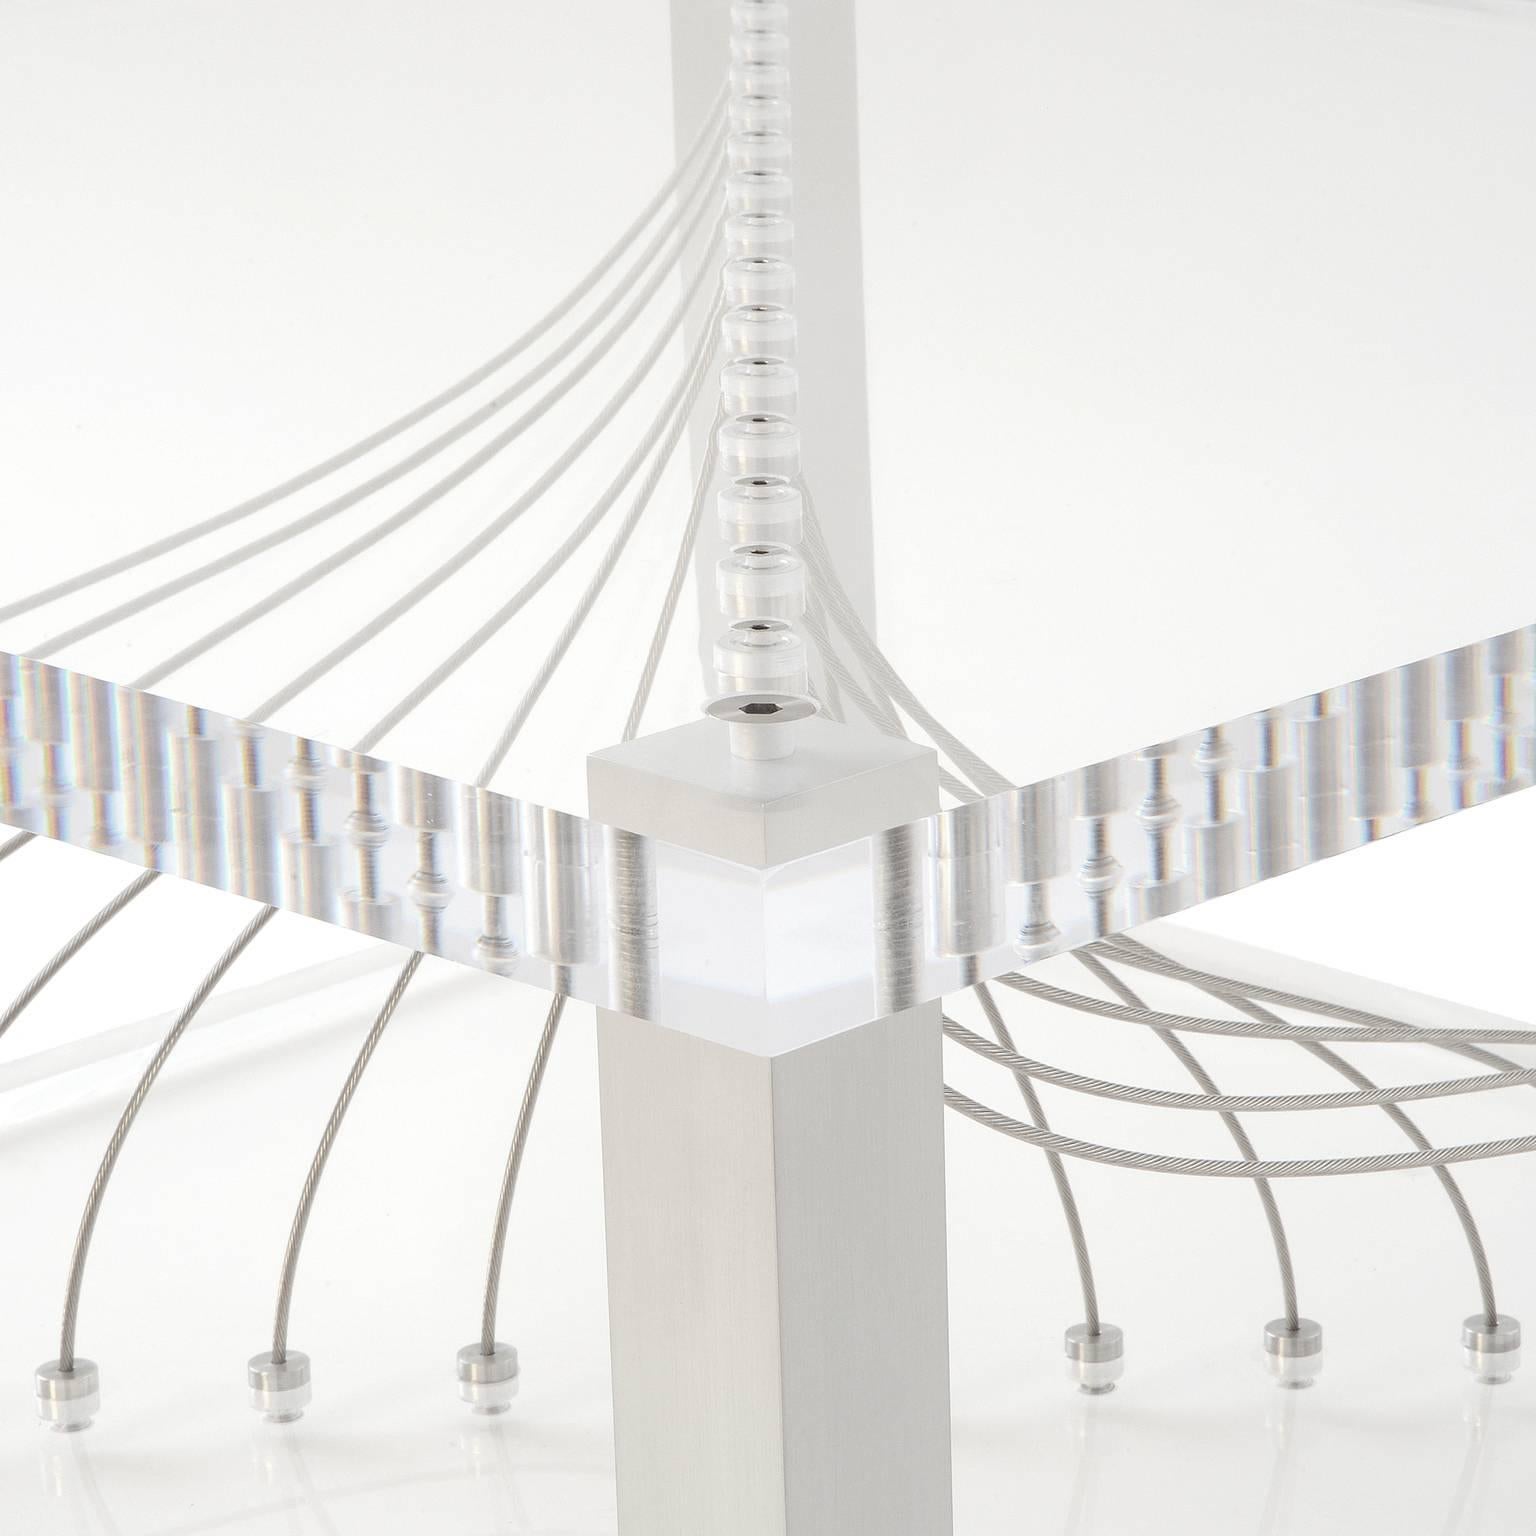 Acrylic Argon von Peter Harrison ist ein atemberaubender Couchtisch aus 1,5 Zoll dickem Acryl, Aluminium und Edelstahlseilen. Die Kabel sind individuell integriert, um ein beeindruckendes visuelles Erlebnis zu schaffen. Die Kabel biegen sich, wenn